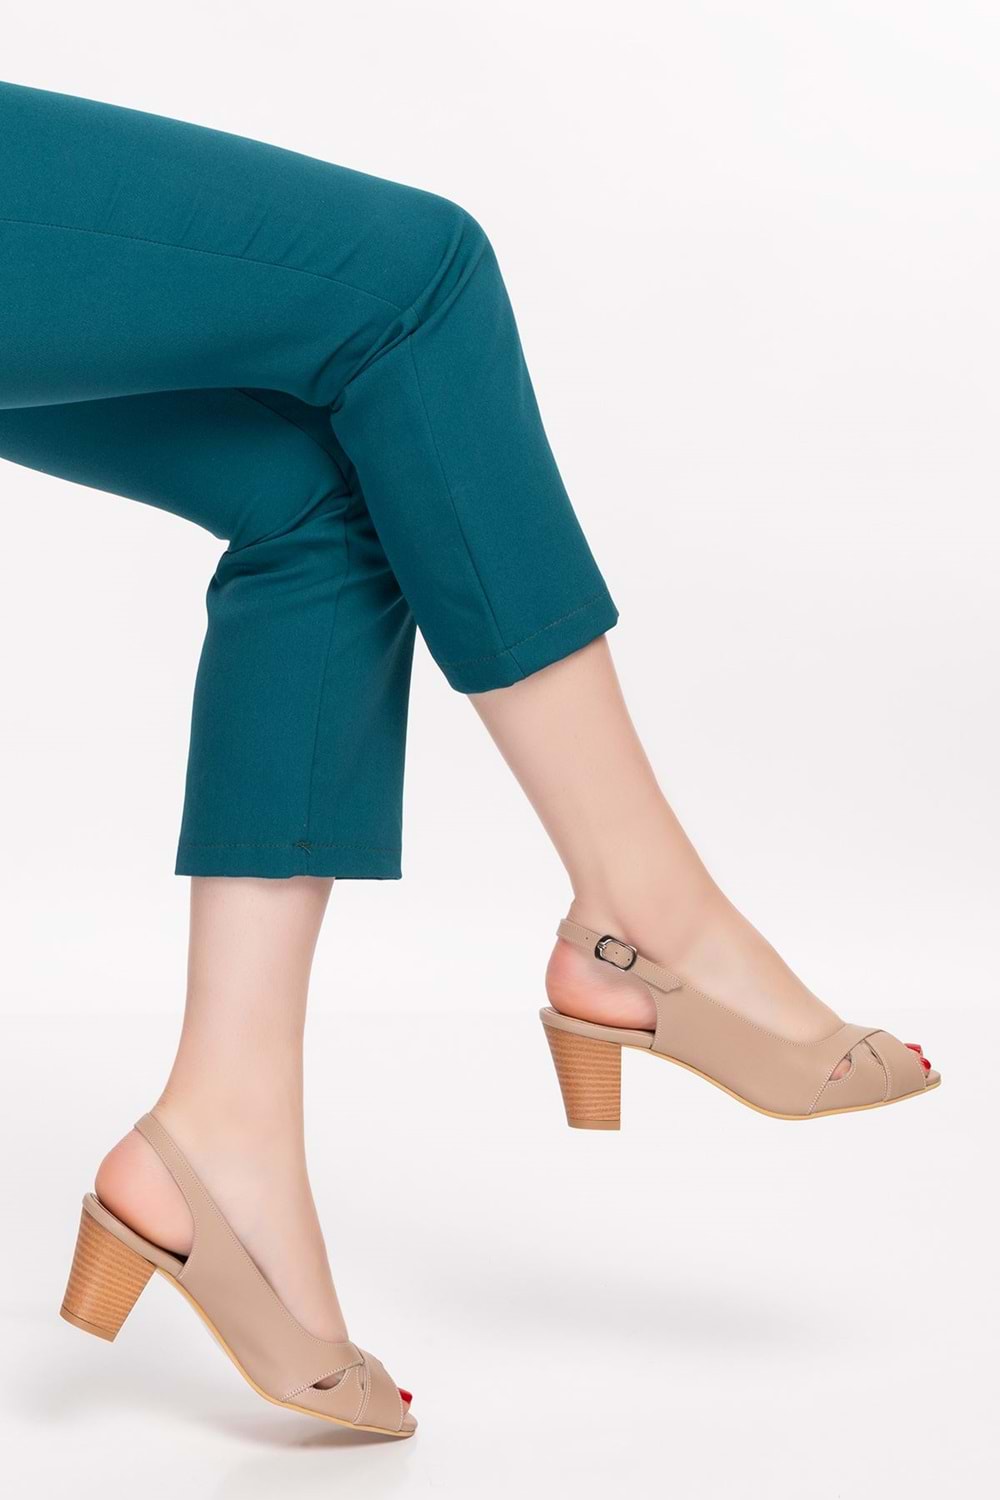 Gondol Kadın Hakiki Deri Klasik Topuklu Ayakkabı şhn.0027 - Vizon - 40